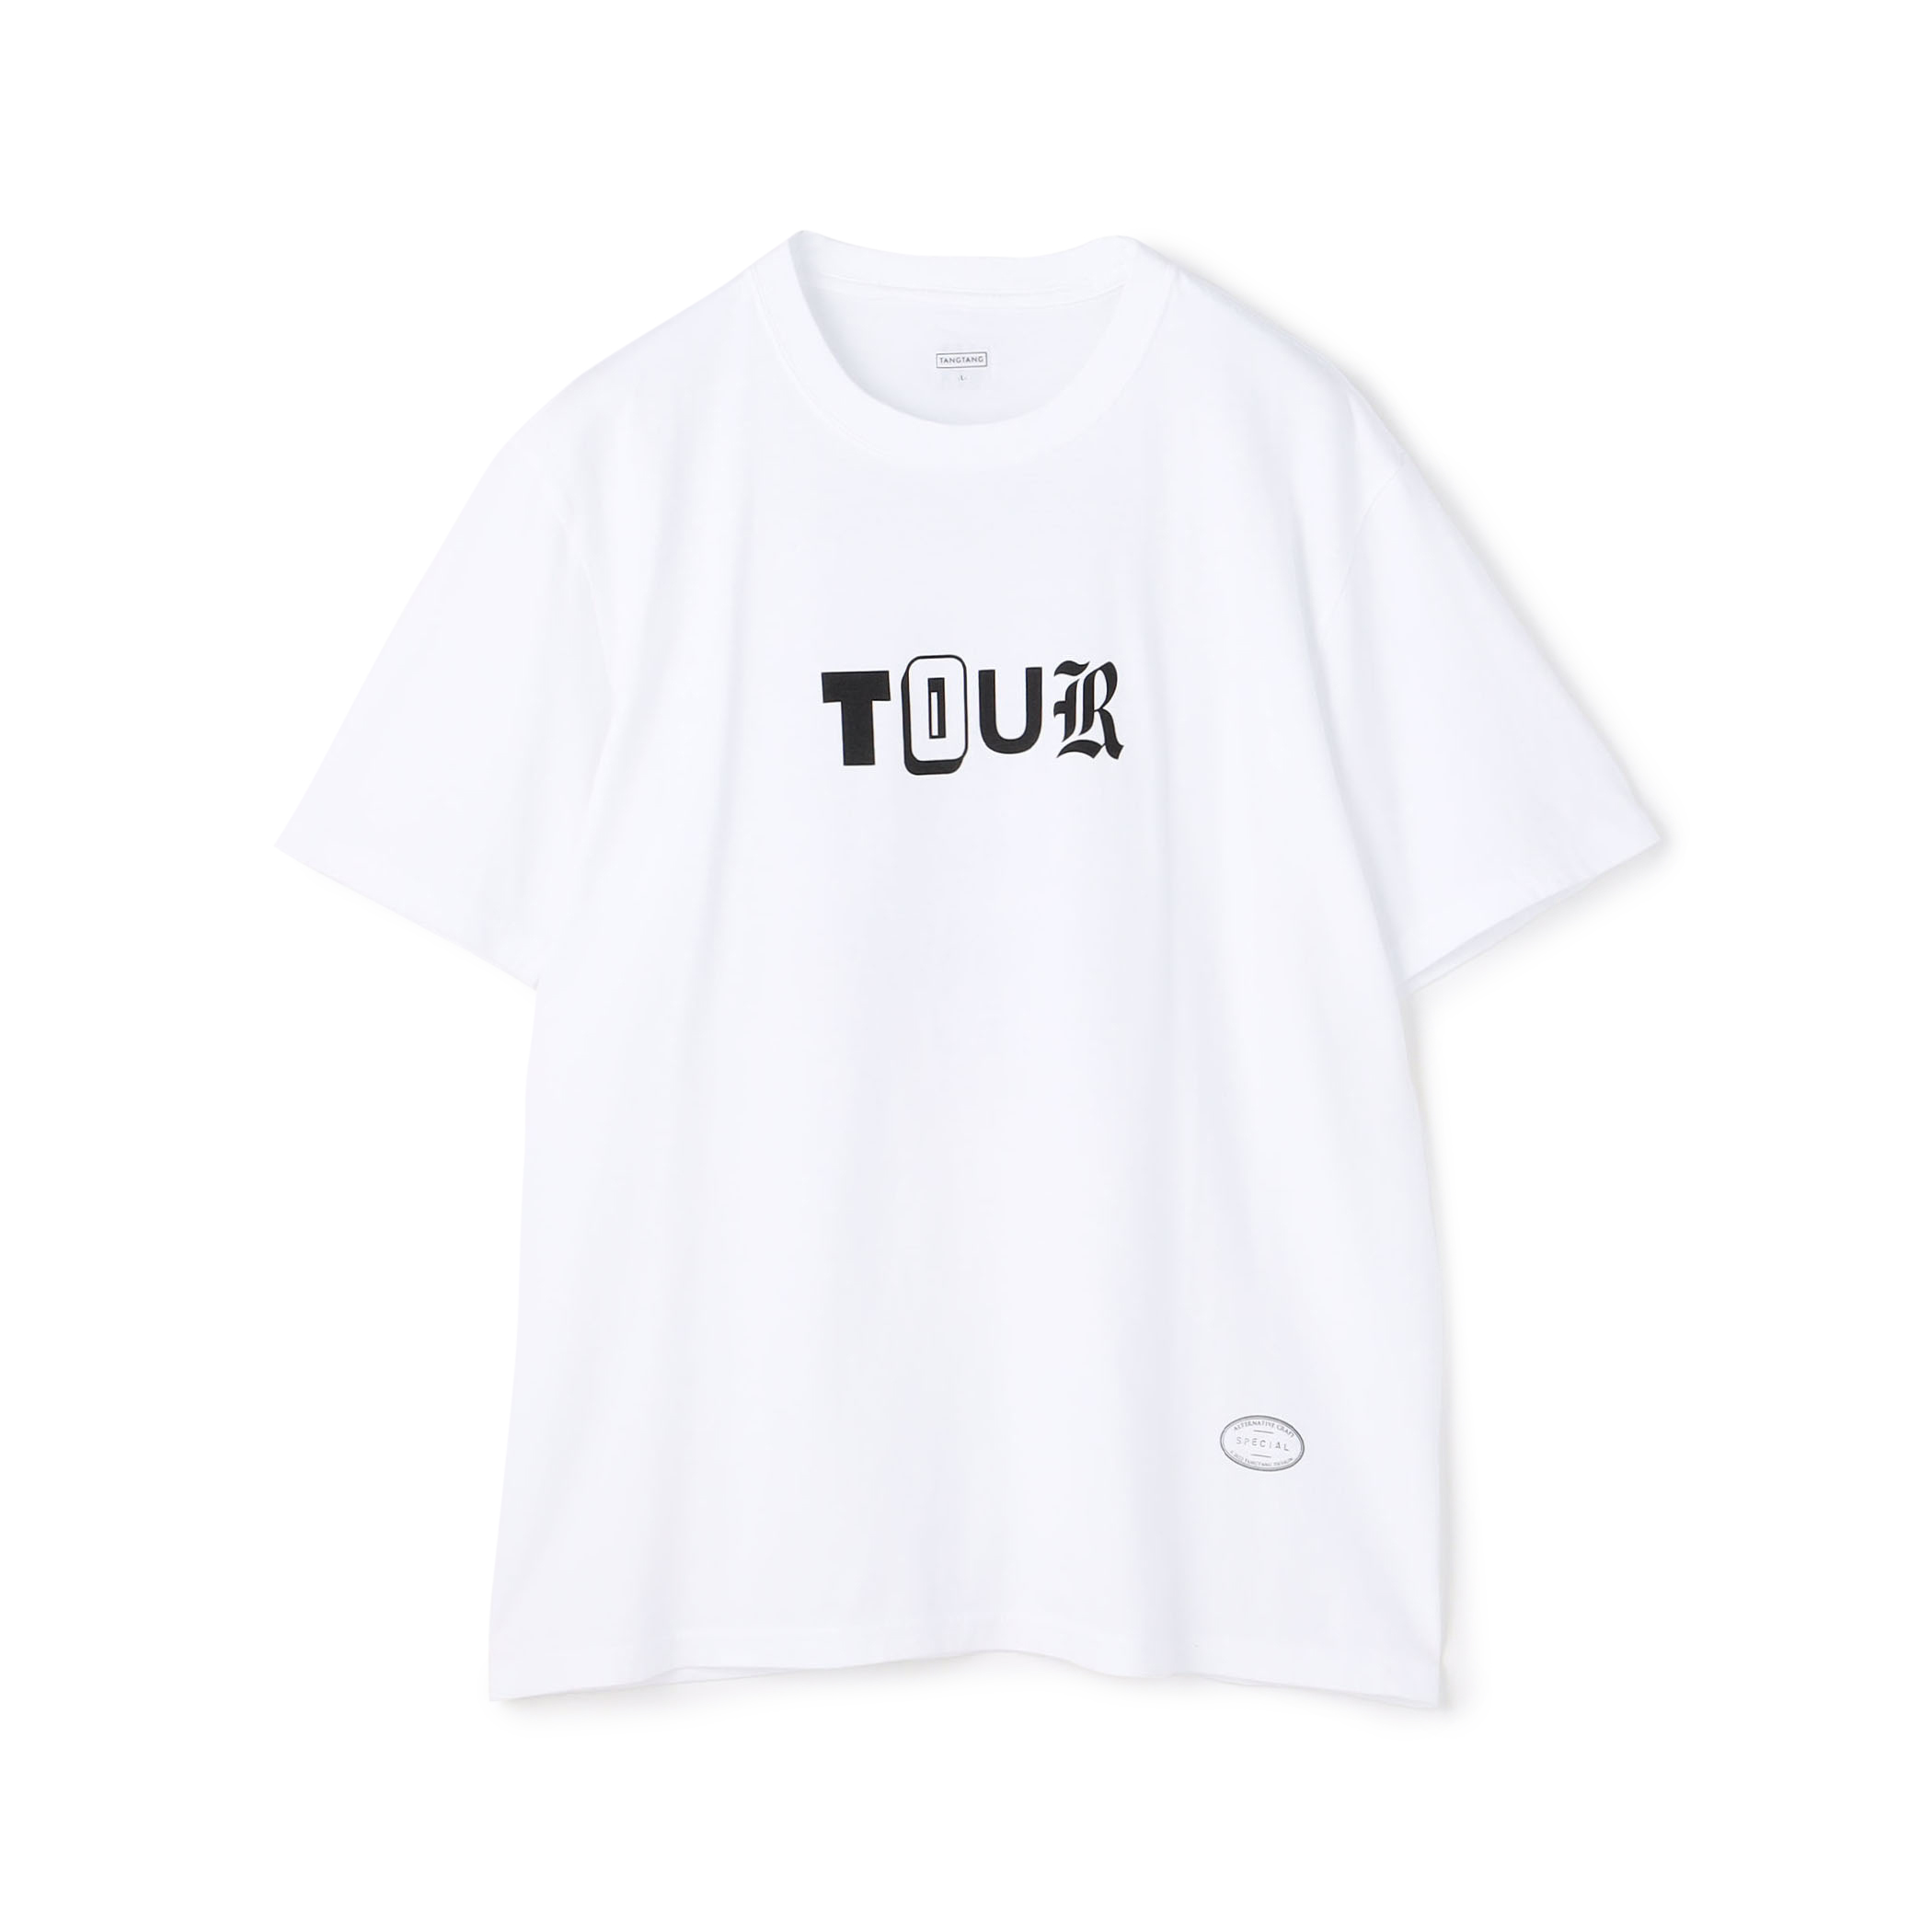 TANG TANG TOUR Tシャツ